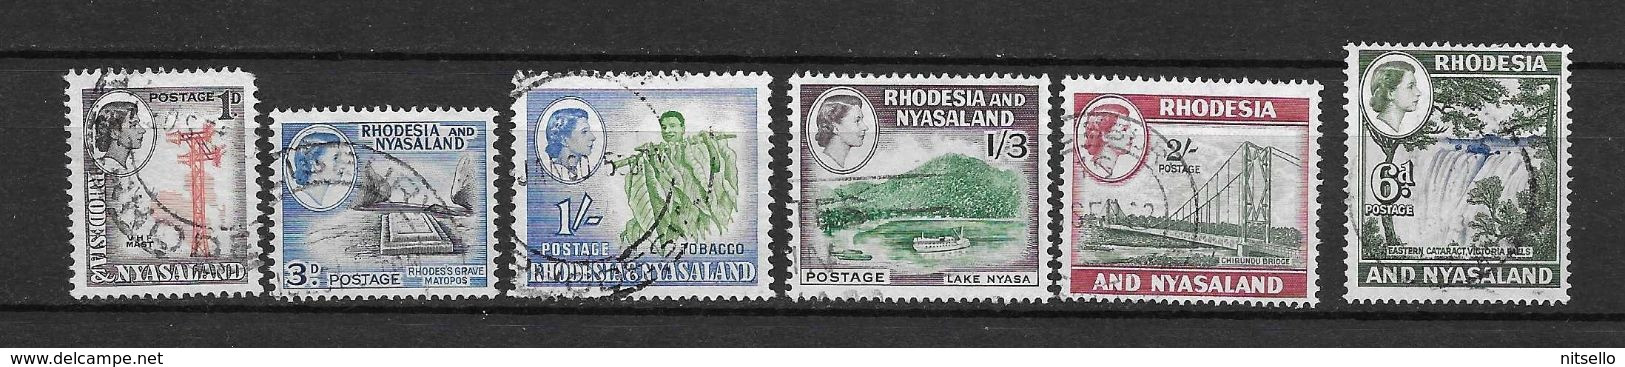 LOTE 2219A  ///   (C012)  RODESIA & NYASALAND          ¡¡¡¡¡ LIQUIDATION!!!!! - Rhodesien & Nyasaland (1954-1963)